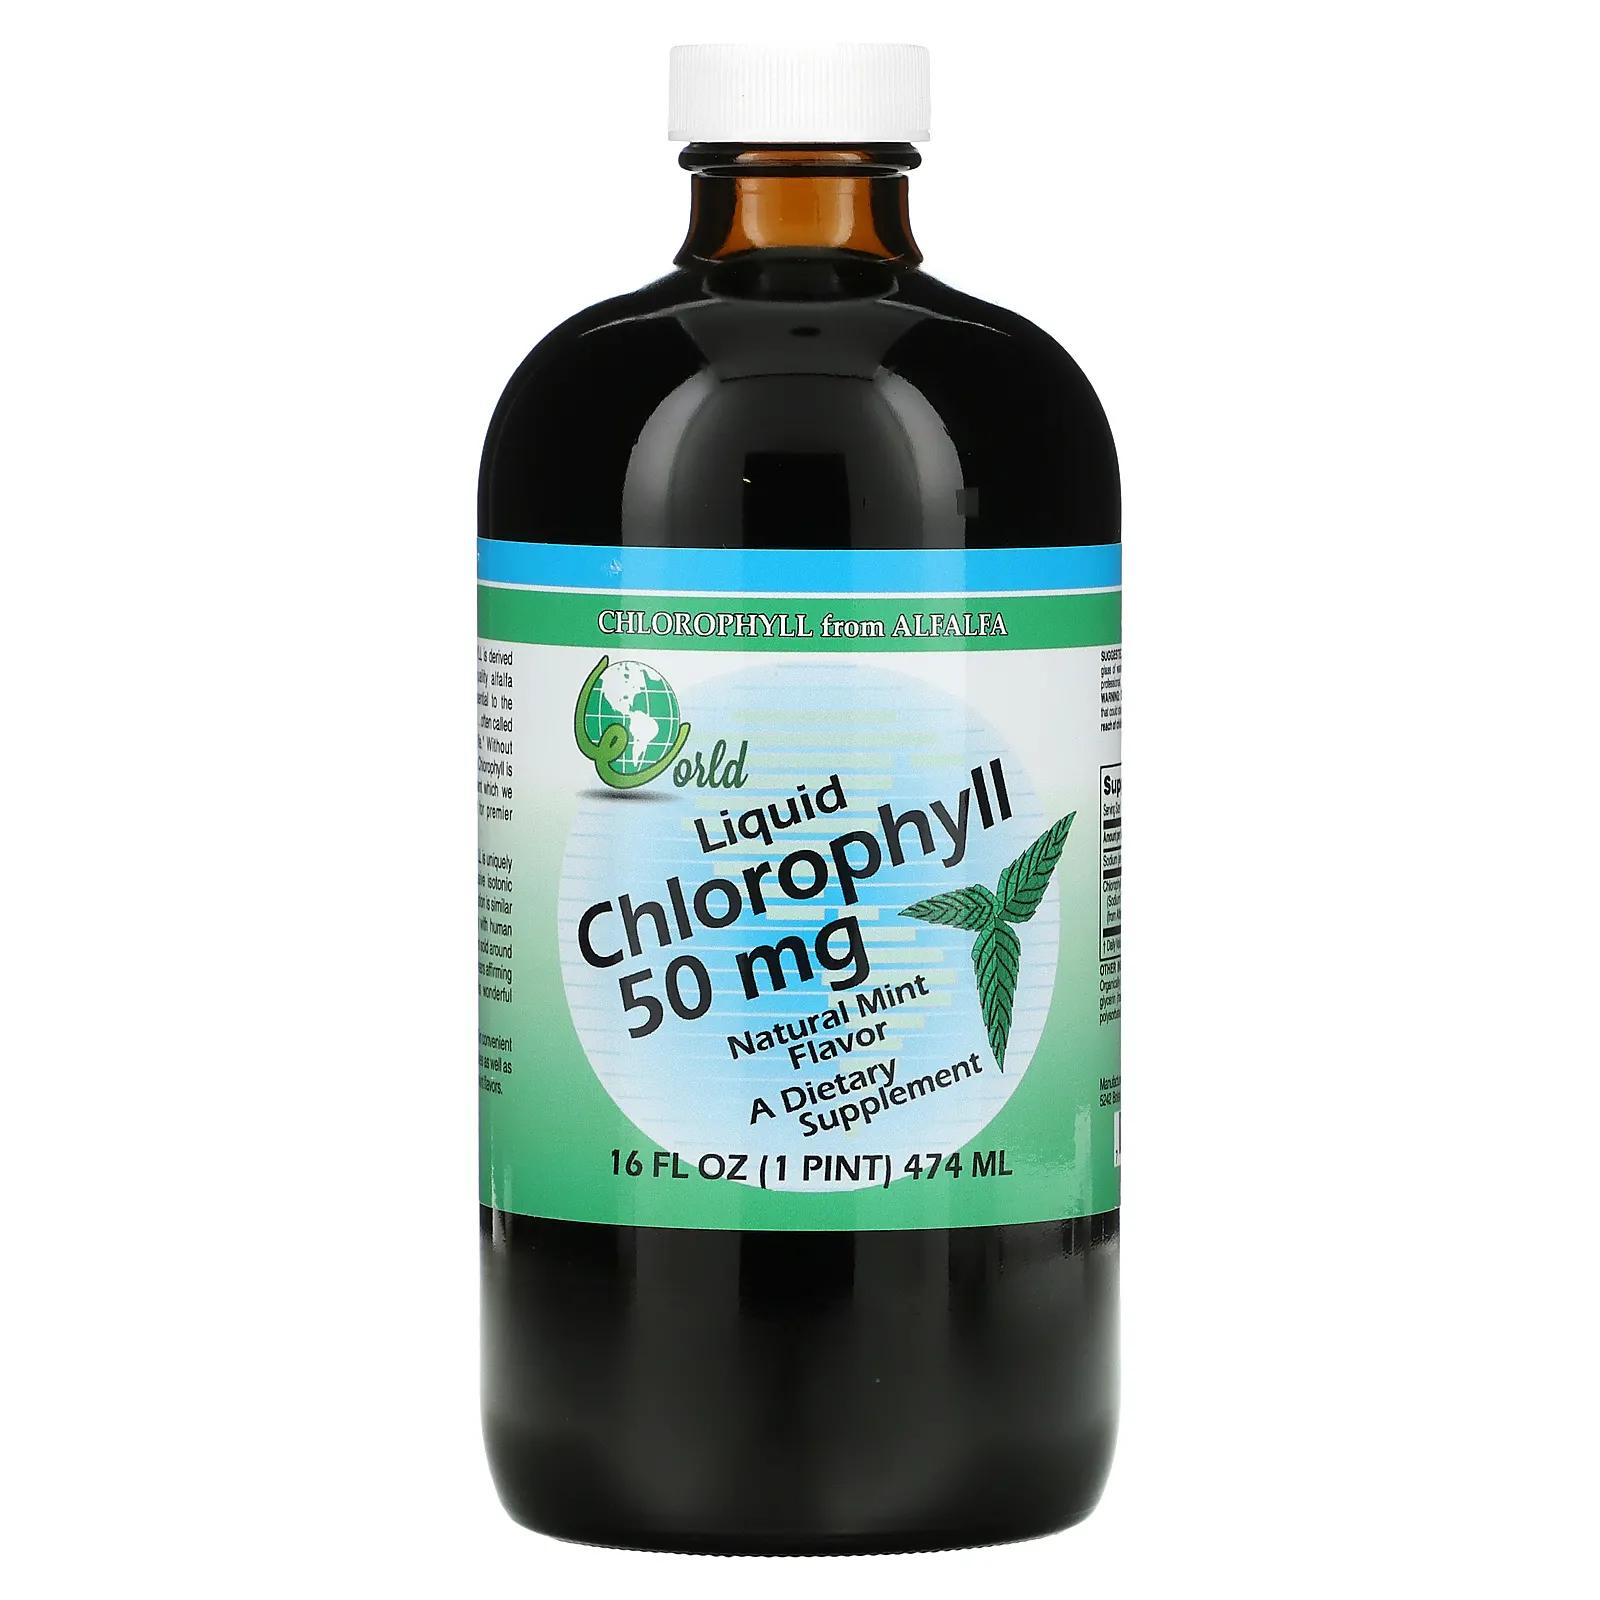 World Organic Жидкий хлорофилл натуральная мята 50 мг 16 жидких унций (474 мл)